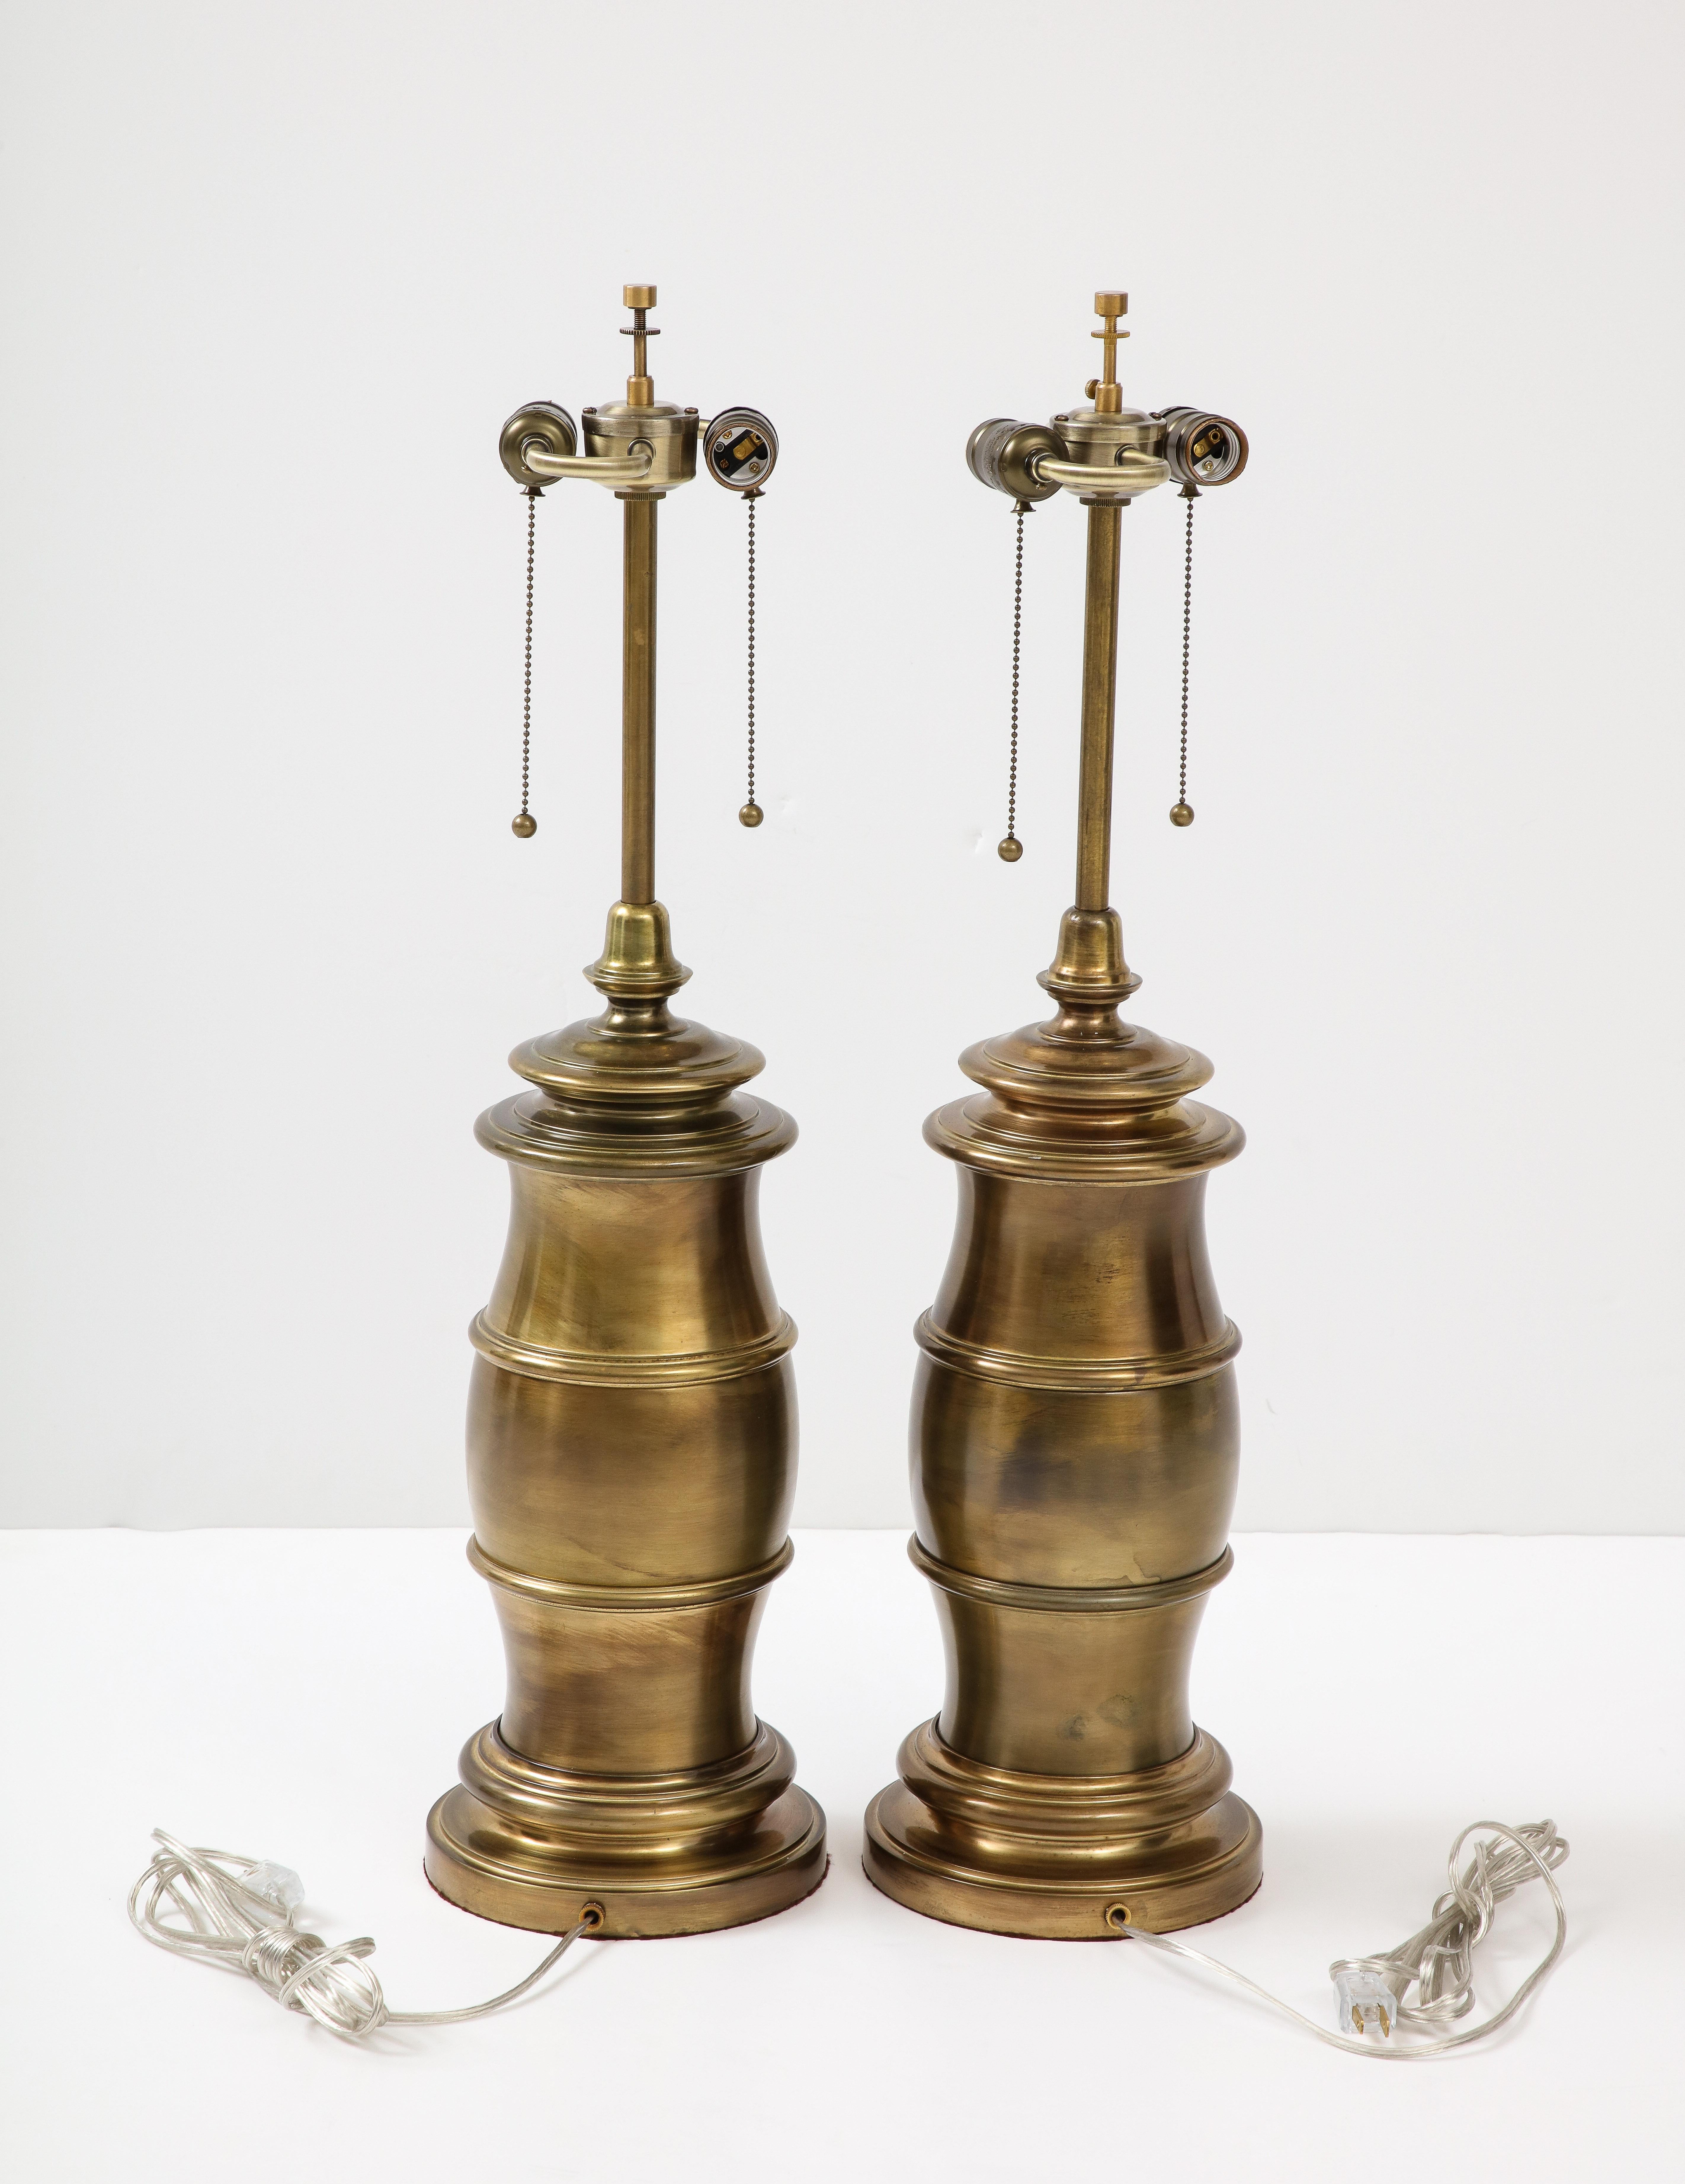 Ein Paar großformatige, stilisierte Lampen in Form eines Fasses, die in dunkler Bronze ausgeführt sind. Die Lampen wurden für den Gebrauch in den USA umverdrahtet, jede Fassung kann eine Glühbirne mit maximal 75 W aufnehmen.